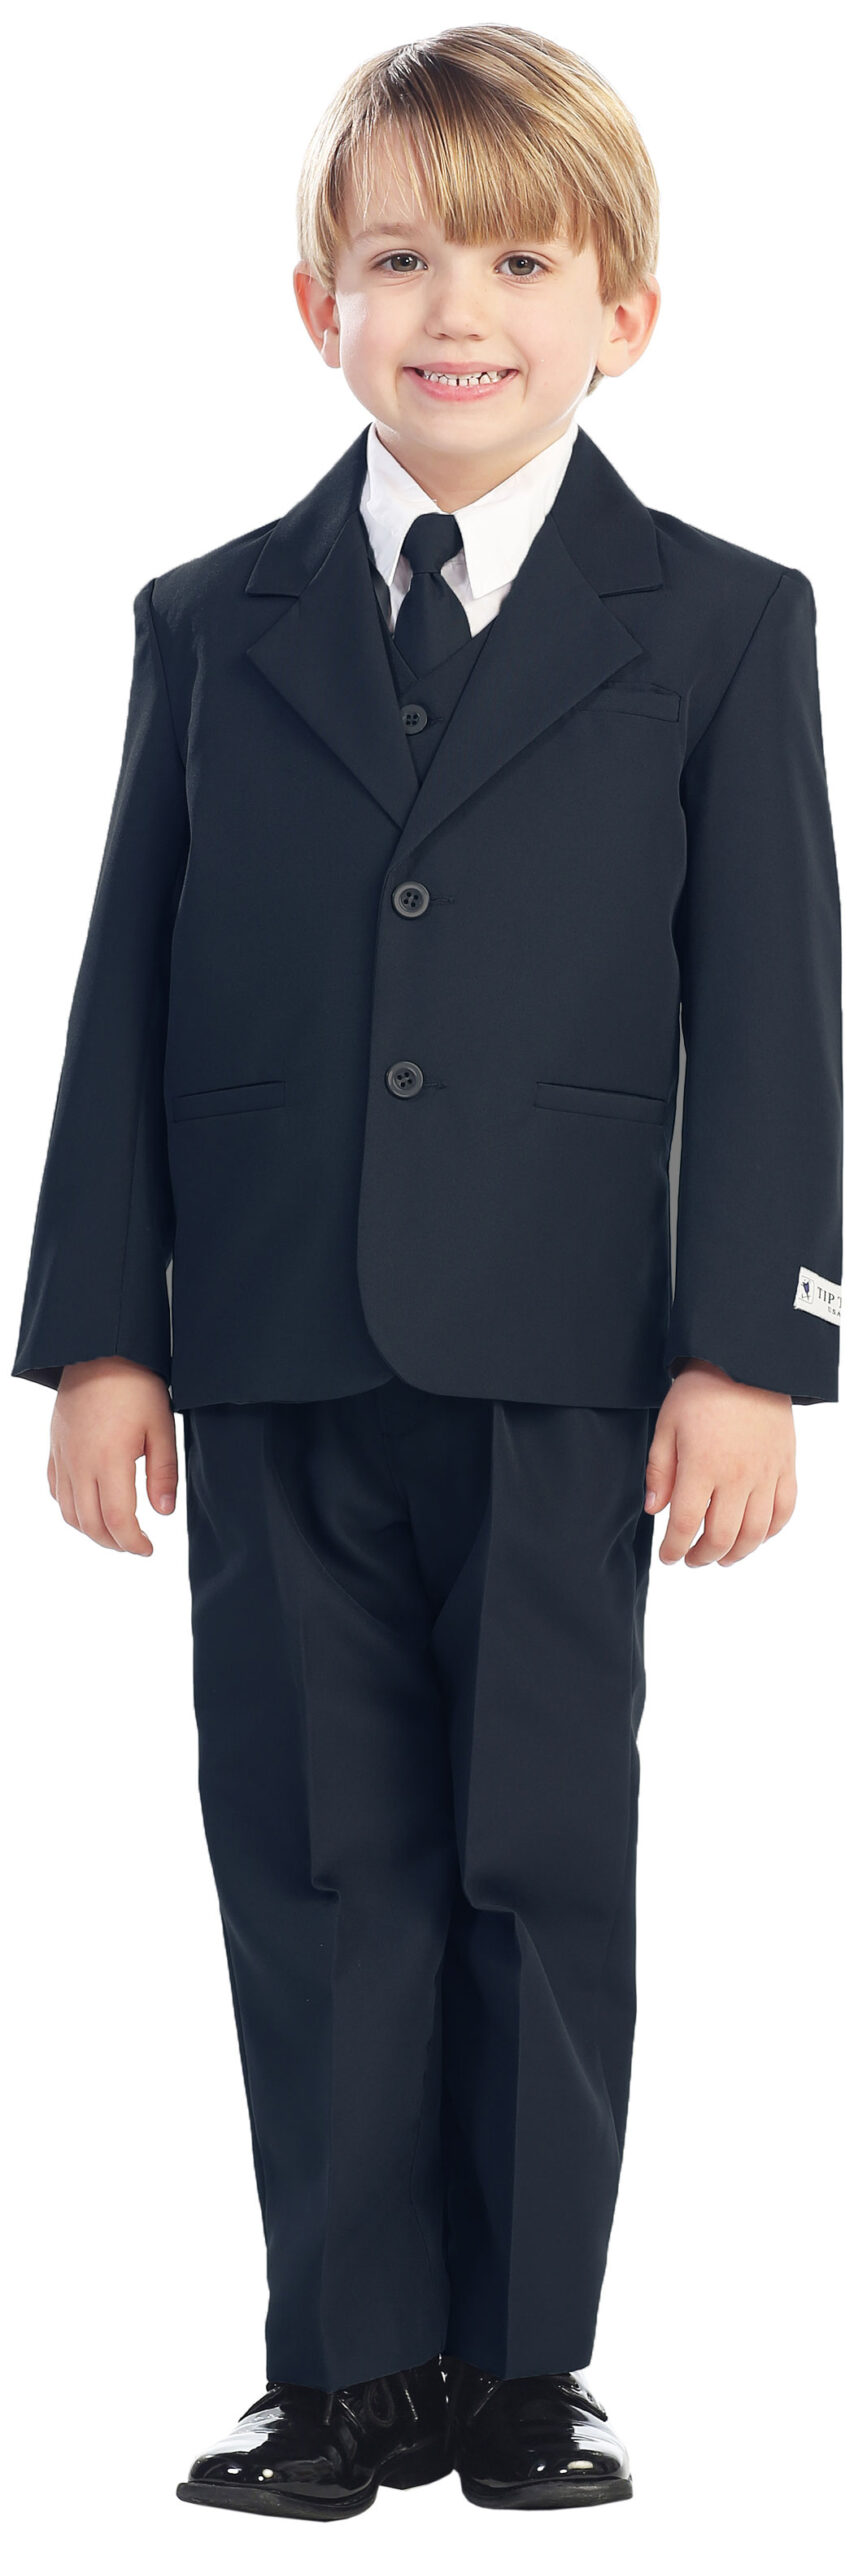 Avery Hill 5-Piece Boy's 2-Button Dress Suit Full-Back Vest - Navy Blue Size 8